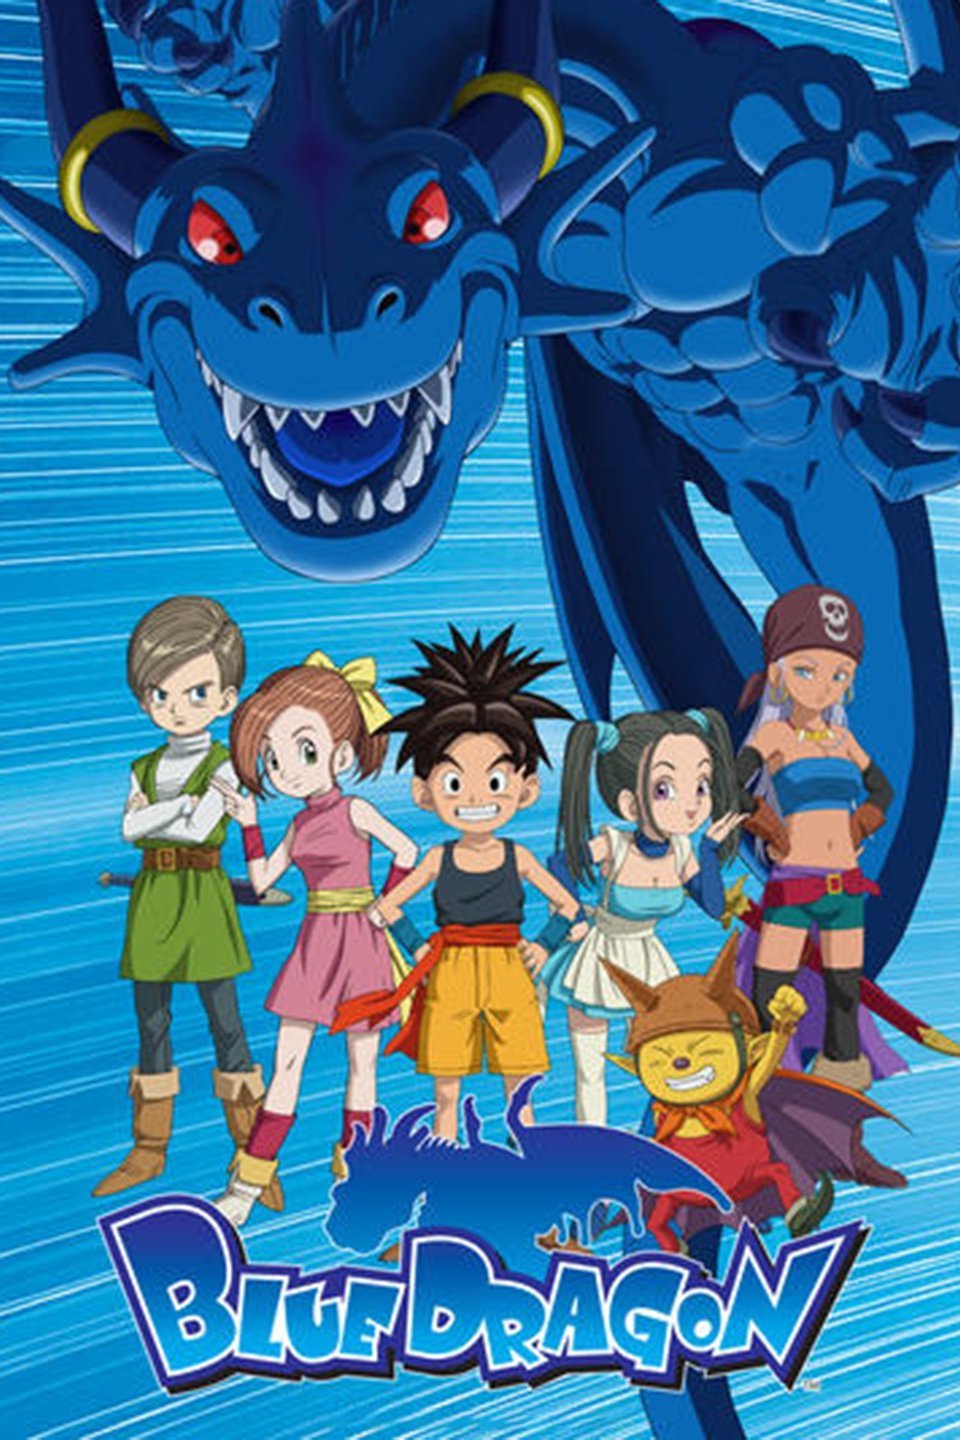 Seiken no Blacksmith | Cartoon dragon, Anime reccomendations, Anime shows